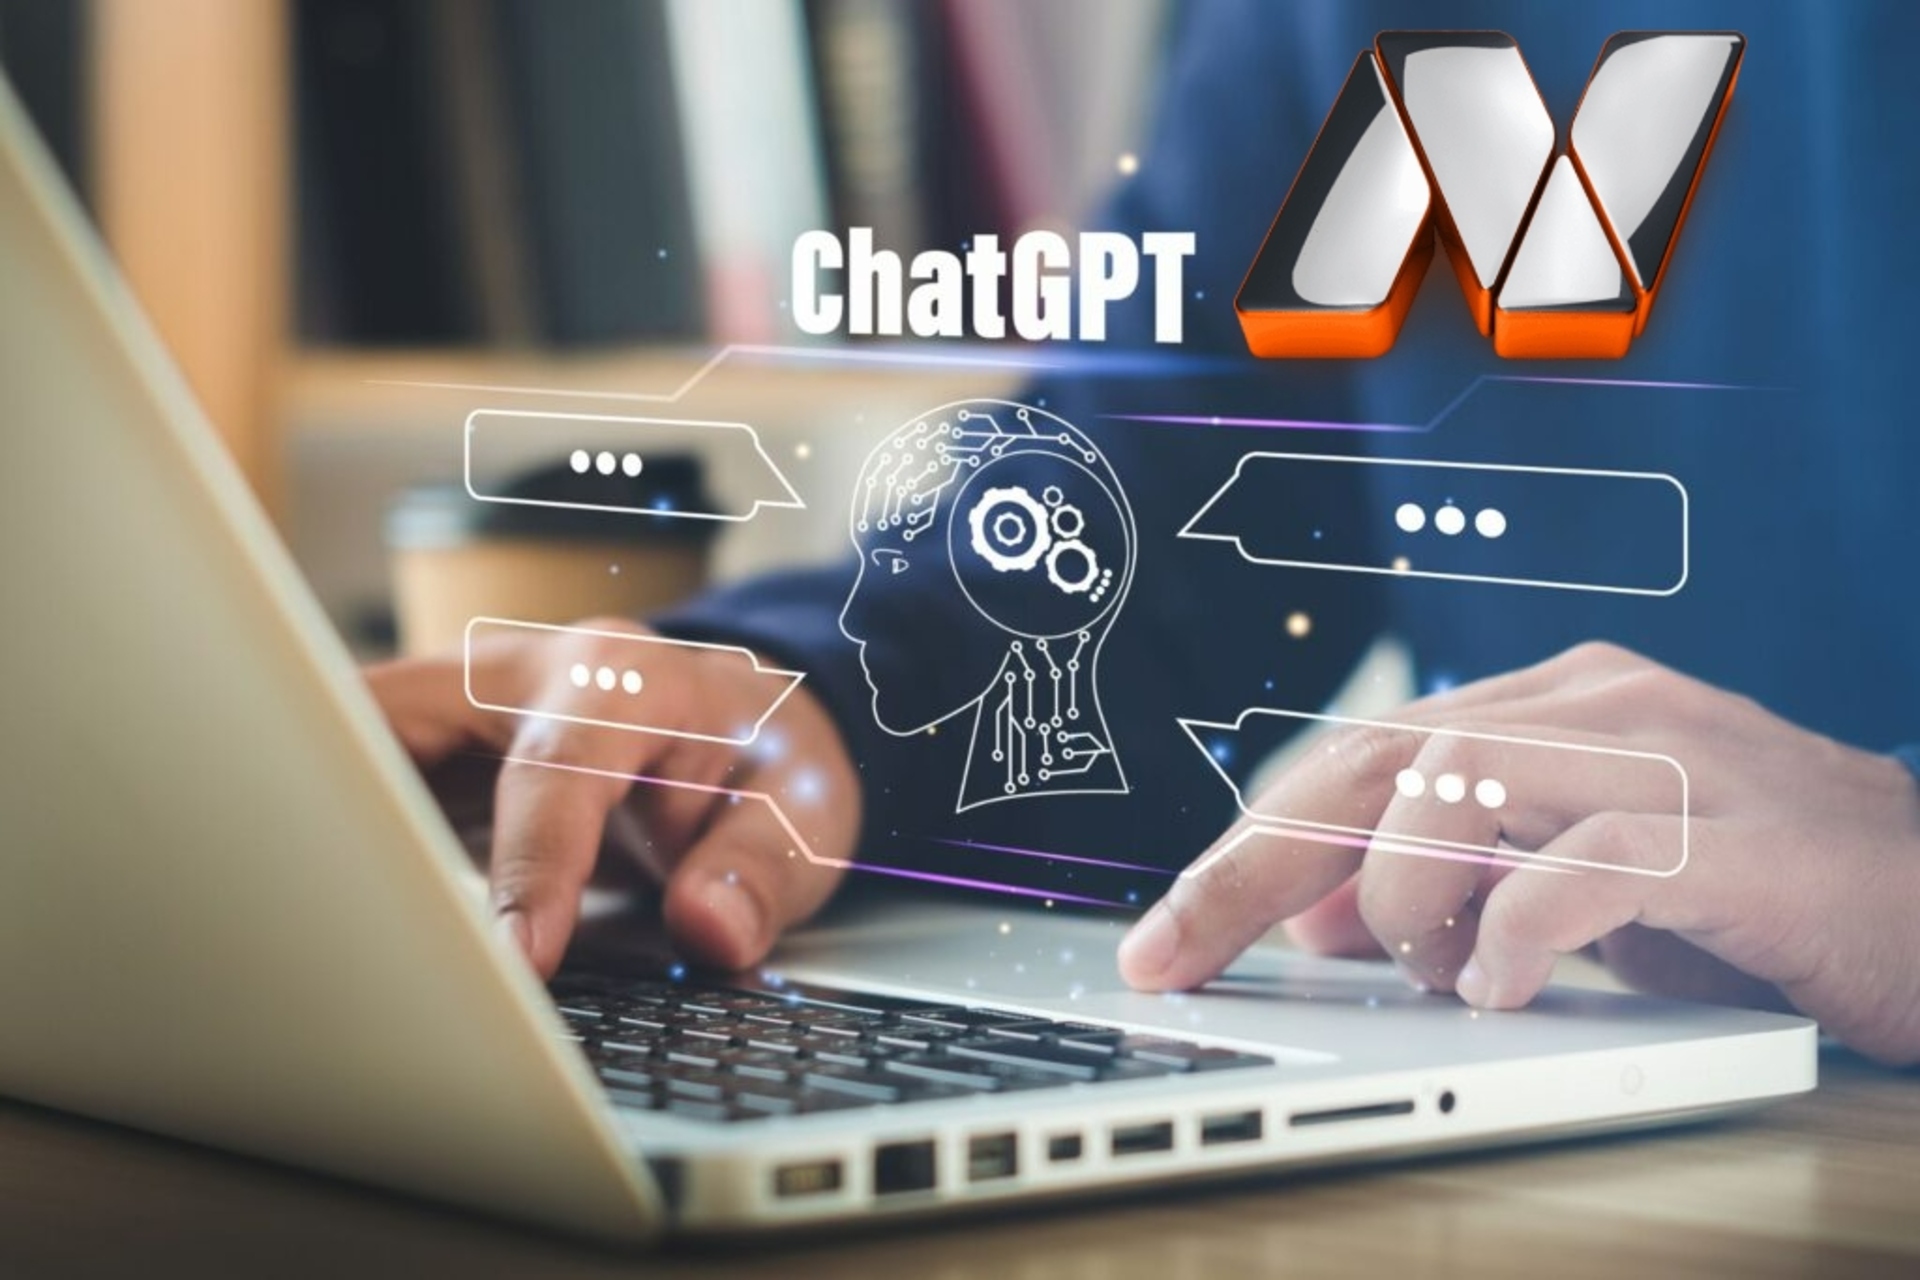 ChatGPT. մենք հարցազրույց վերցրեցինք OpenAI-ի ChatGPT-ից՝ խնդրելով նրան պատմել Innovando.News-ի և լրագրության և հաղորդակցության փոխհարաբերությունների մասին: